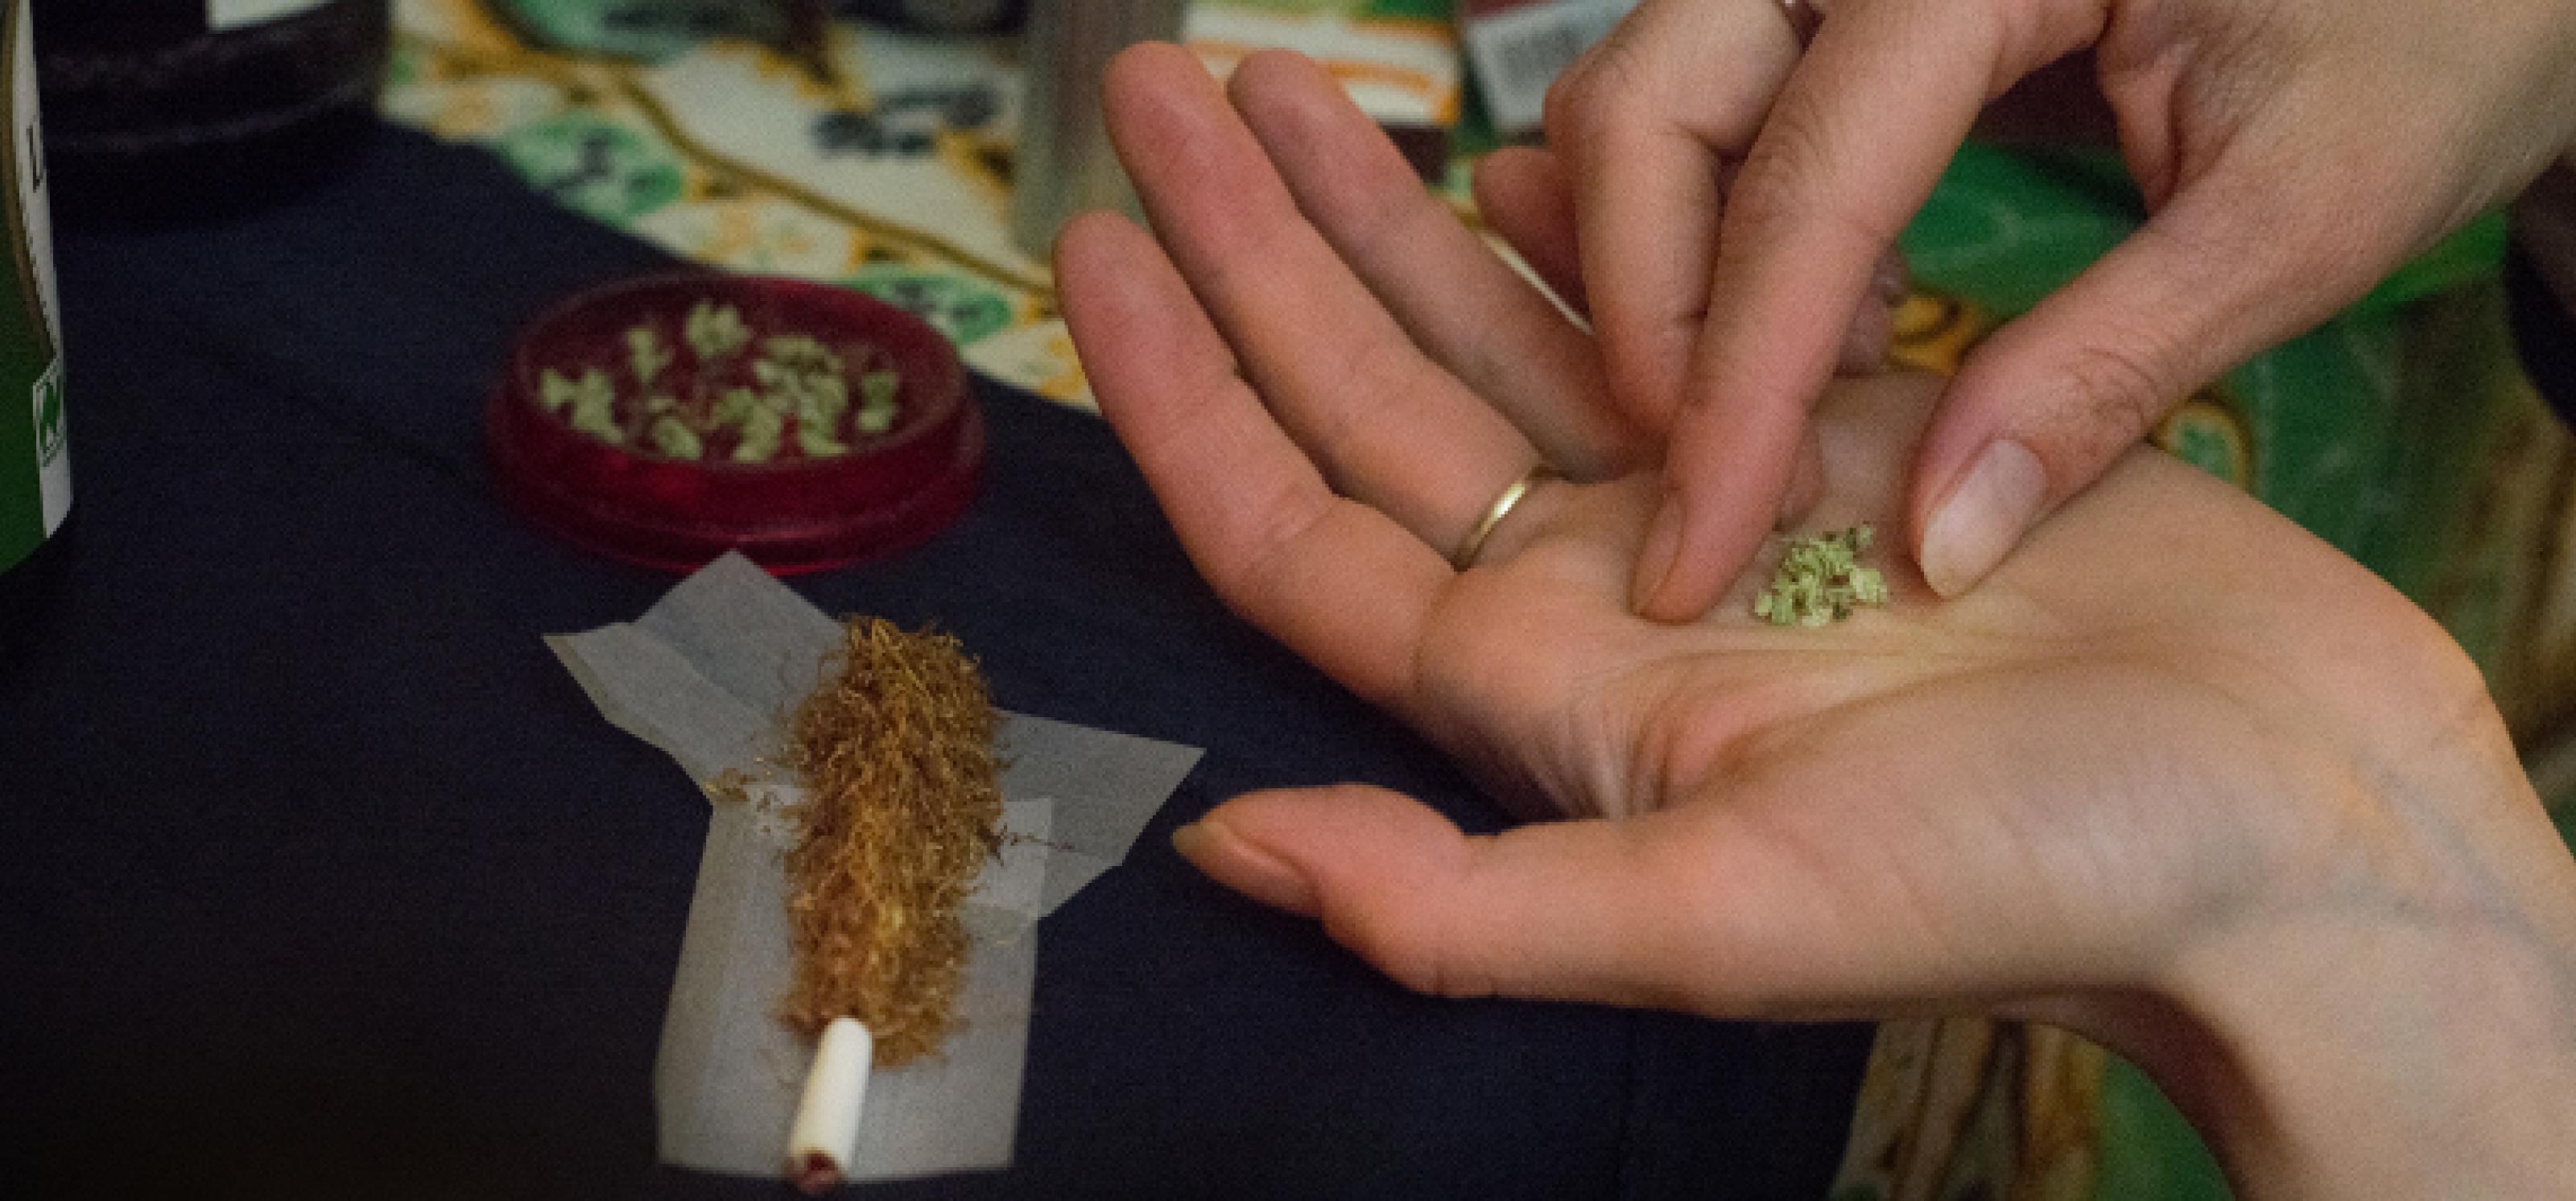 Zwei Hände mit getrocknetem Cannabis, im Hintergrund der Joint, der gerade gebaut wird